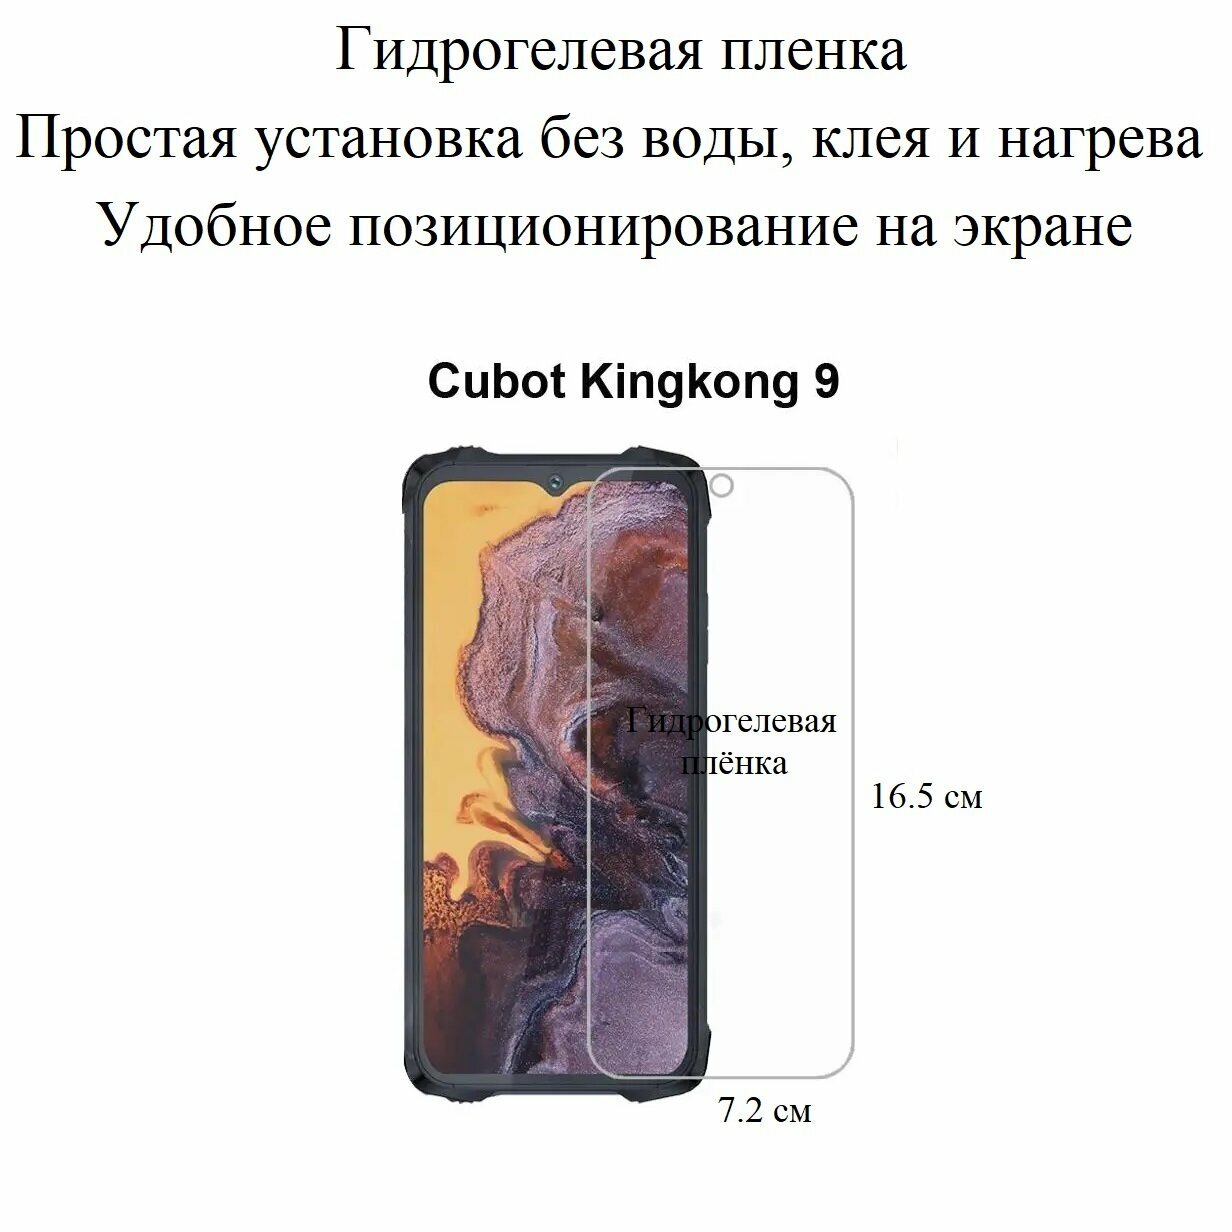 Глянцевая гидрогелевая пленка hoco. на экран смартфона Cubot KingKong 9